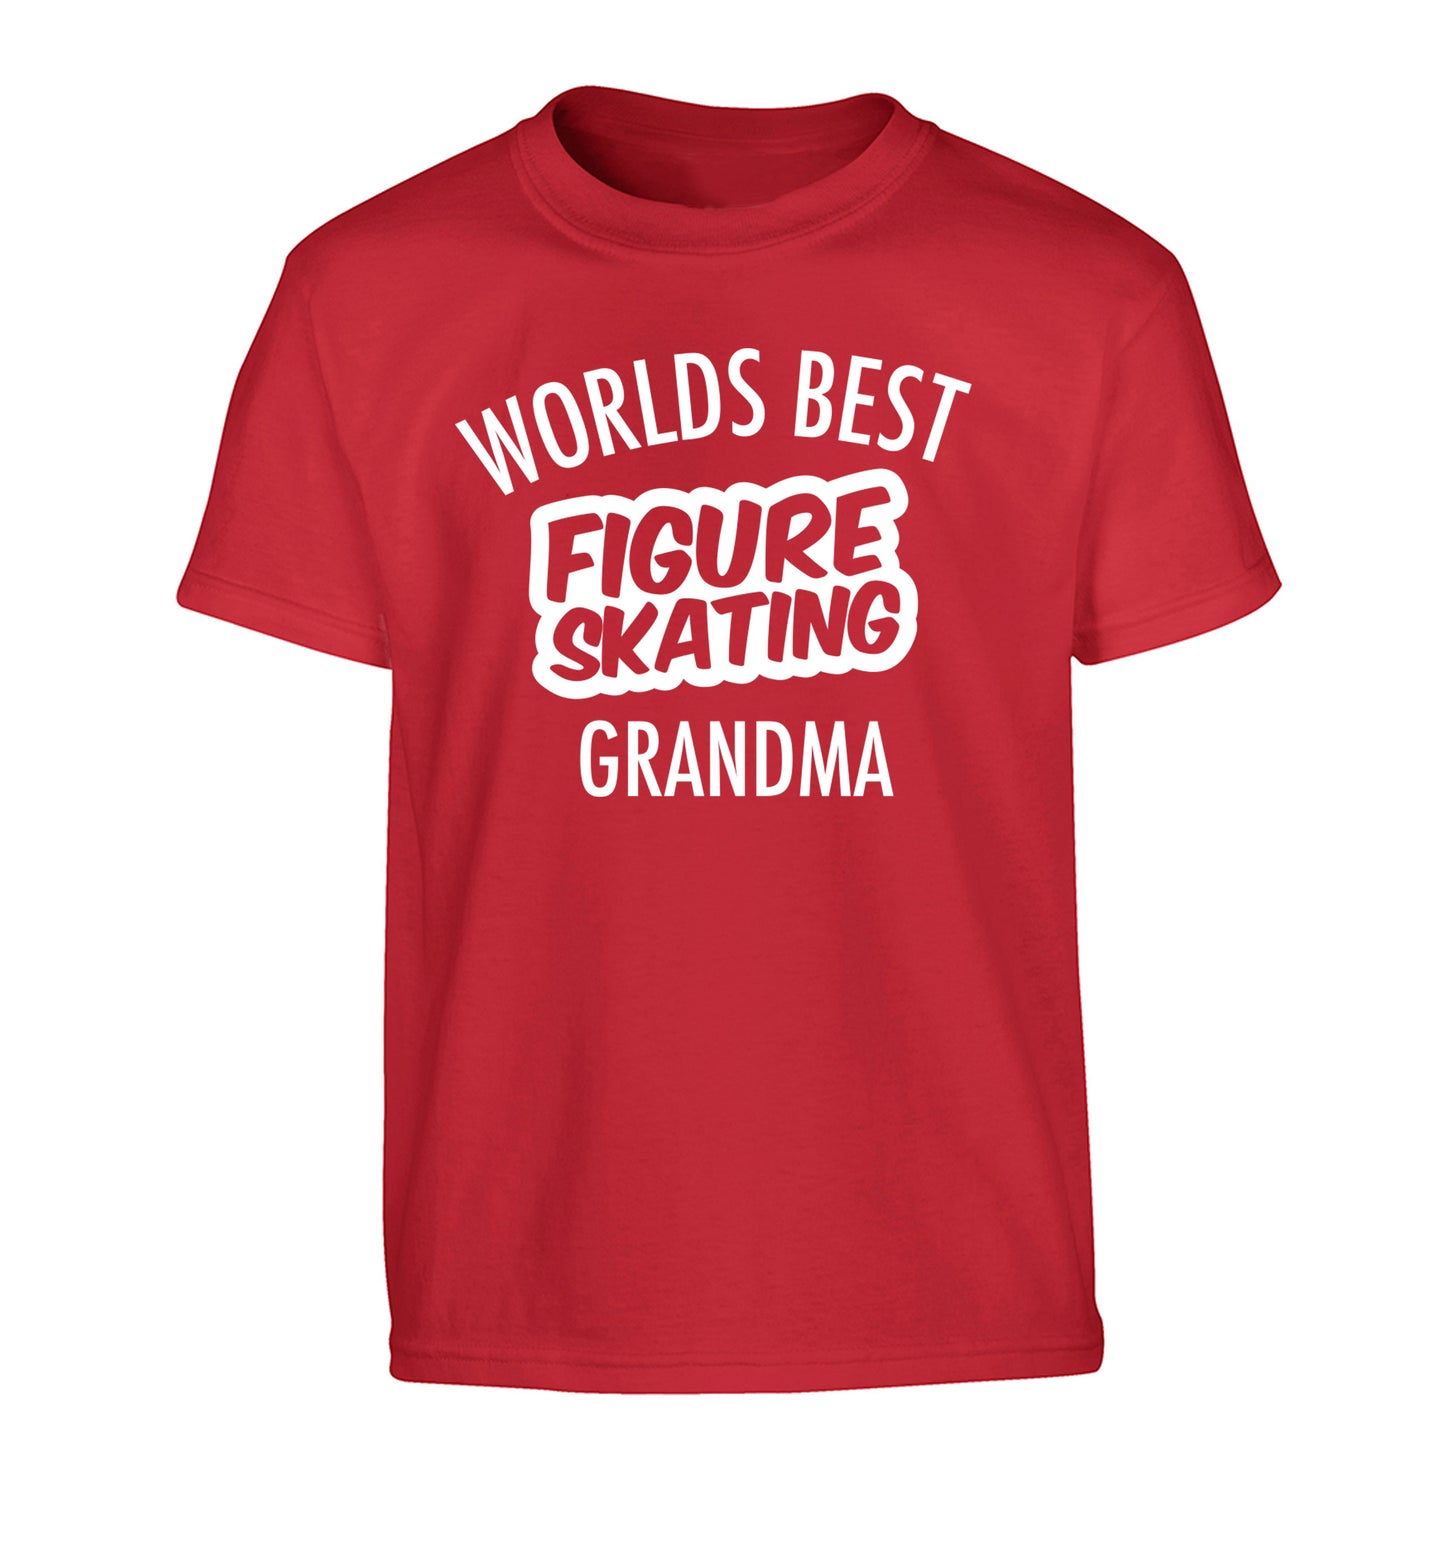 Worlds best figure skating grandma Children's red Tshirt 12-14 Years